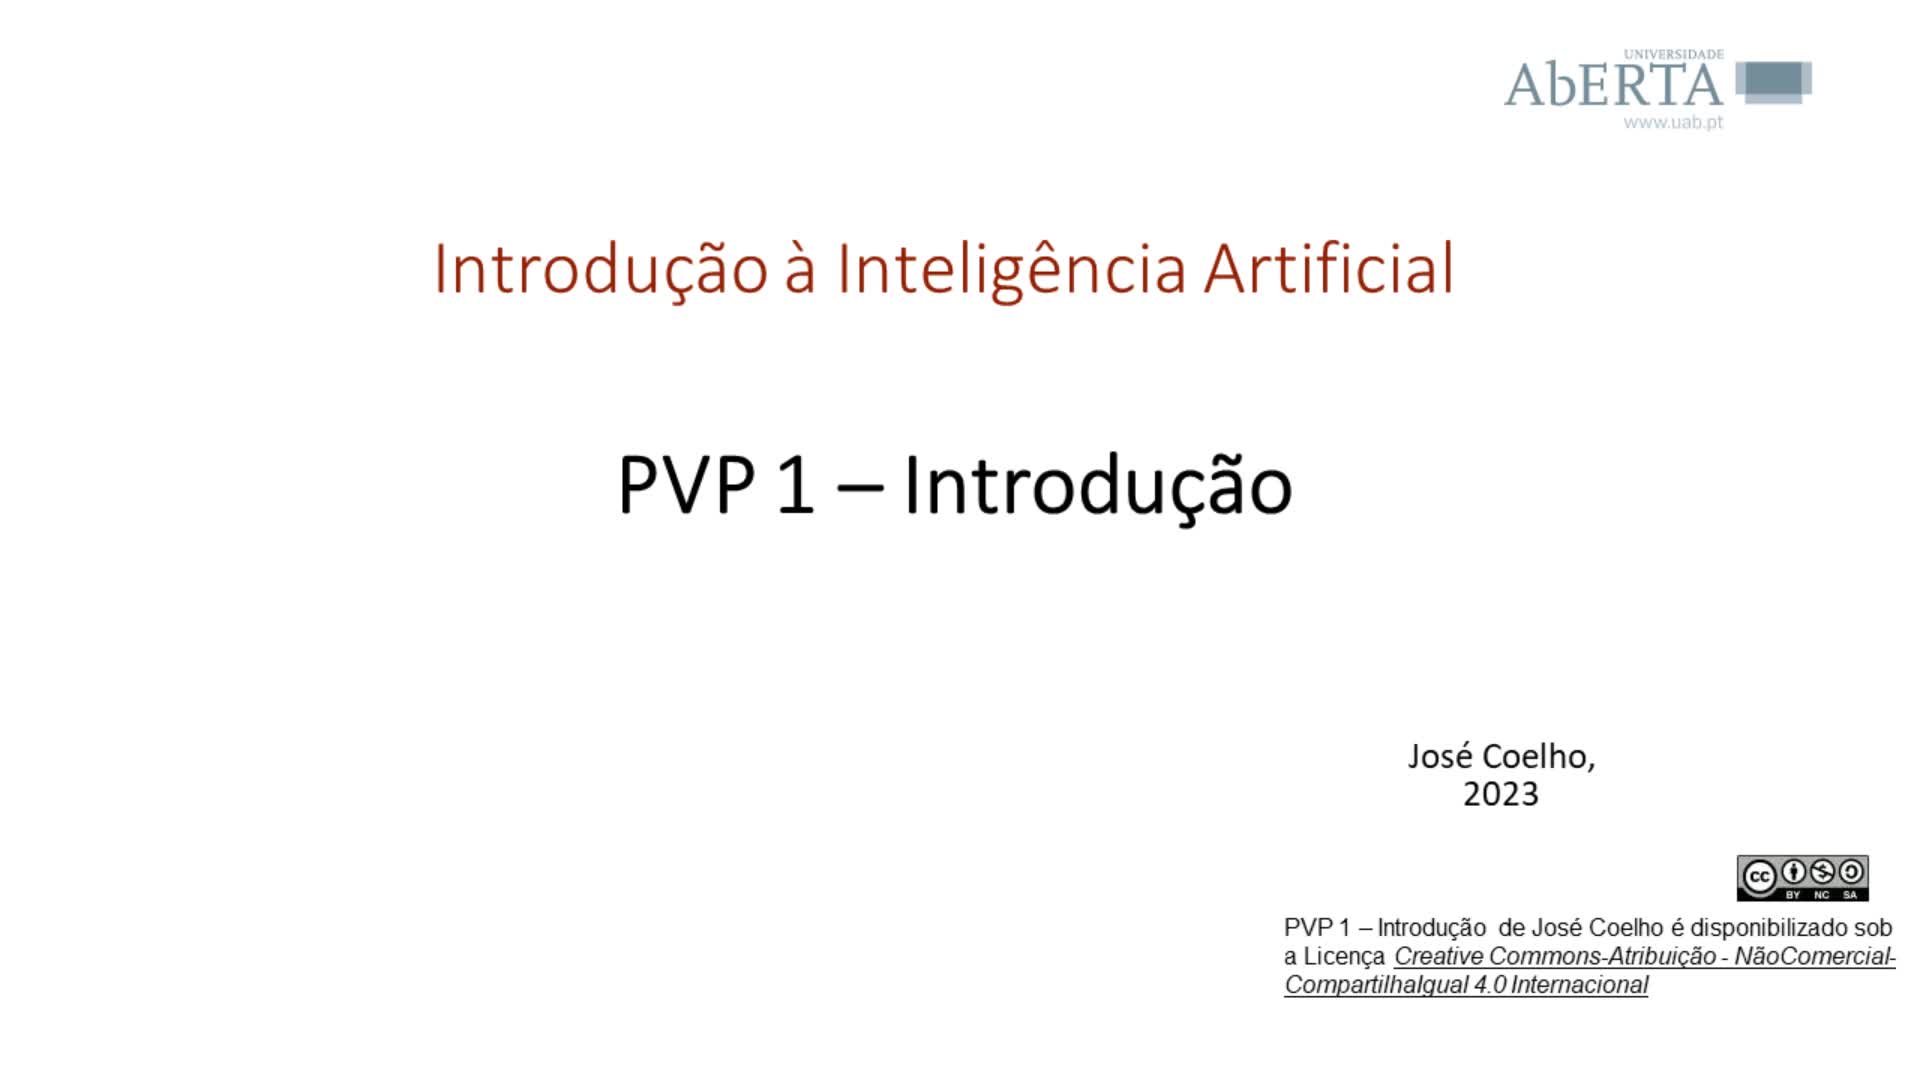  Introdução à Inteligência Artificial: introdução